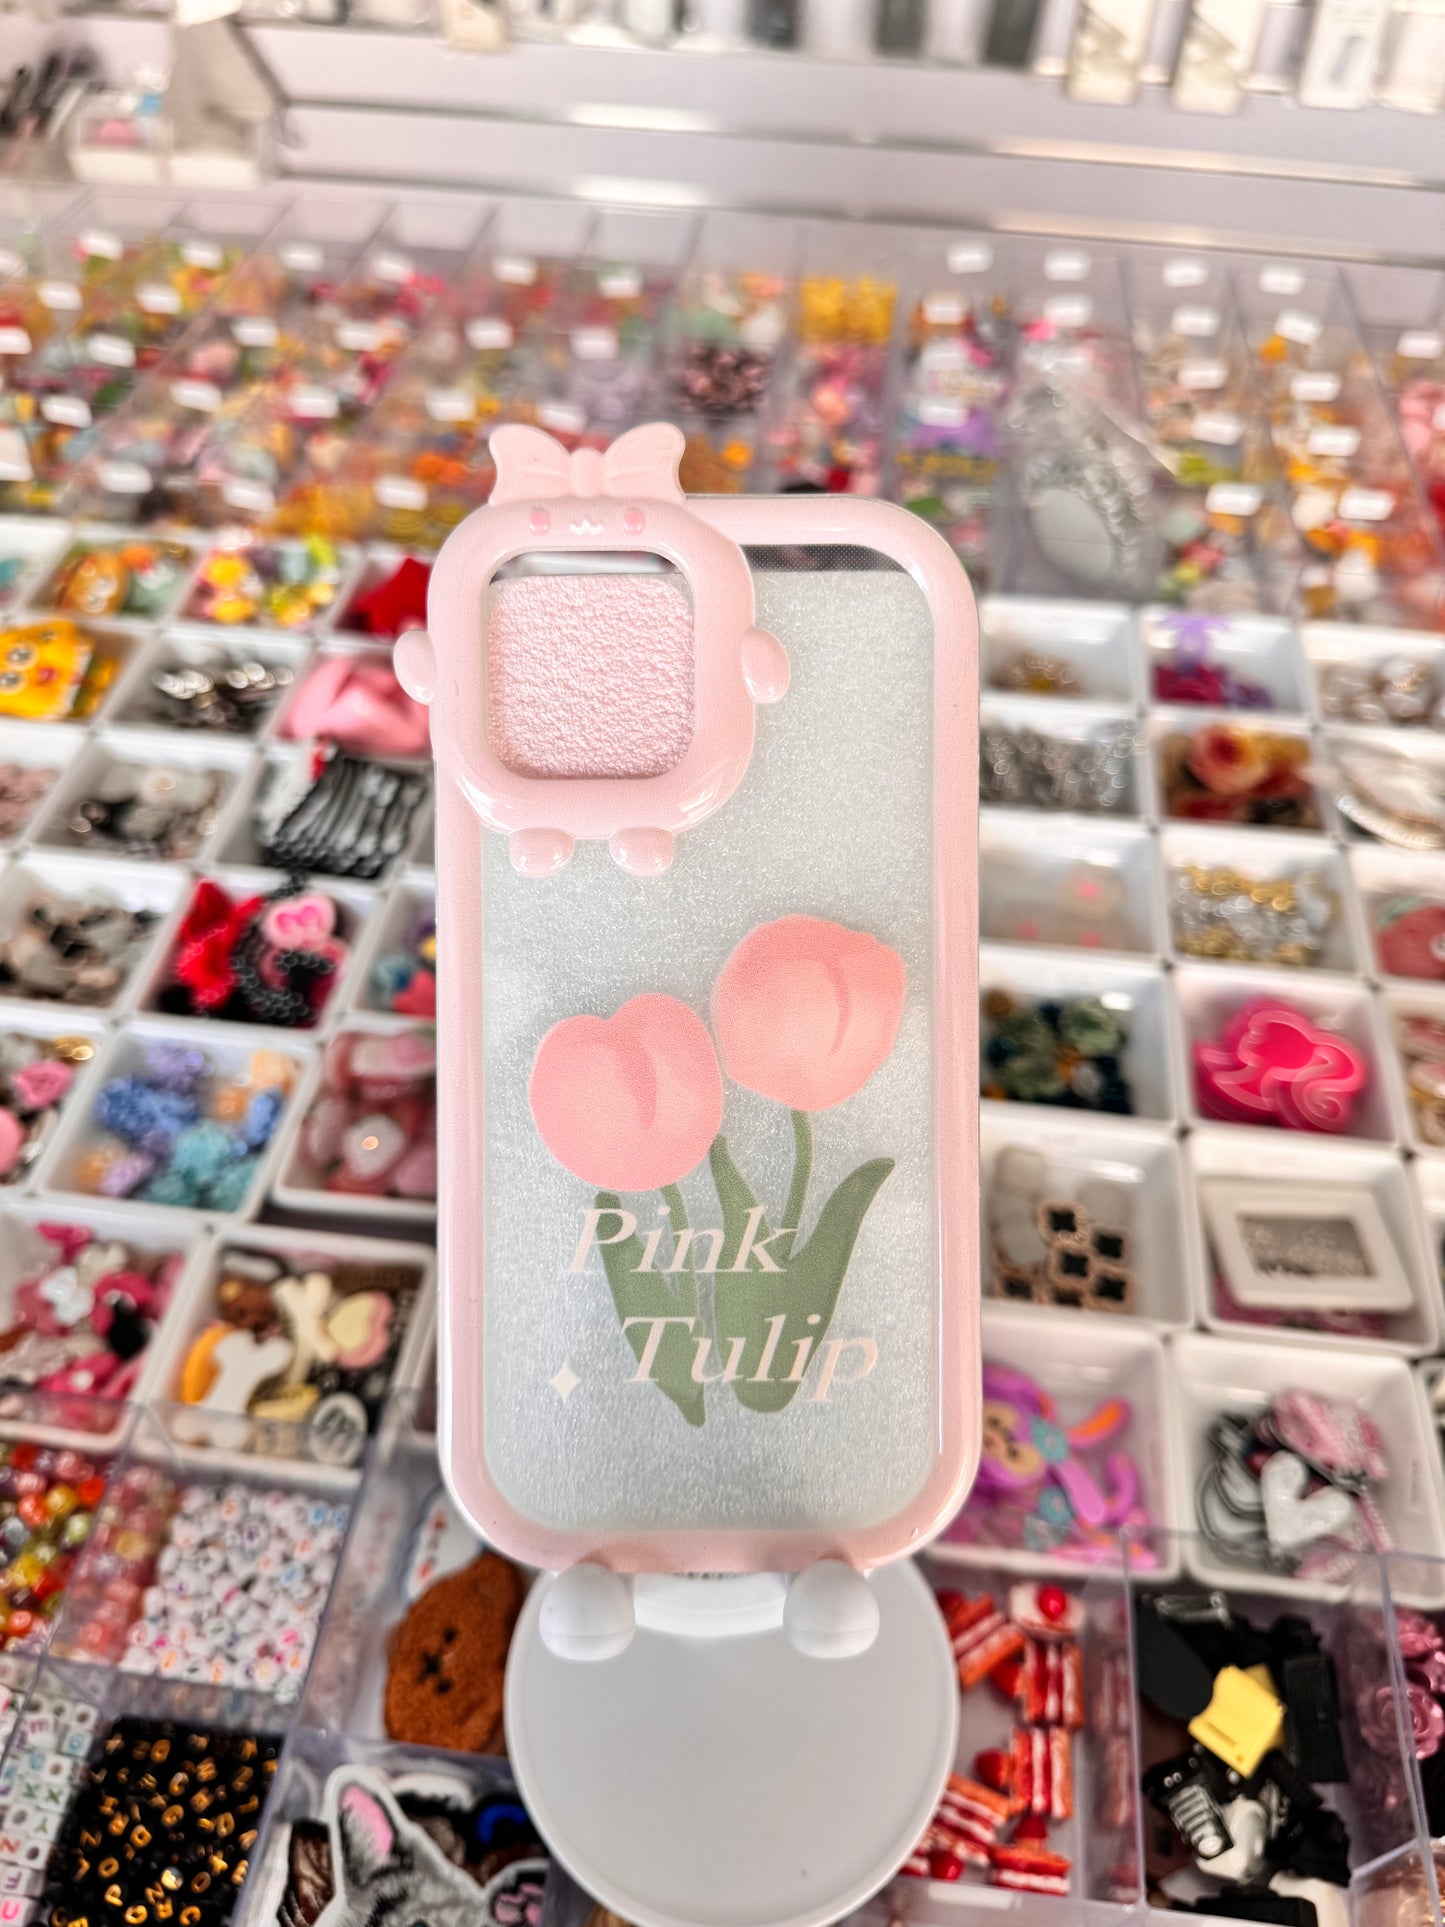 Pink Tulip transparent Case for iPhones